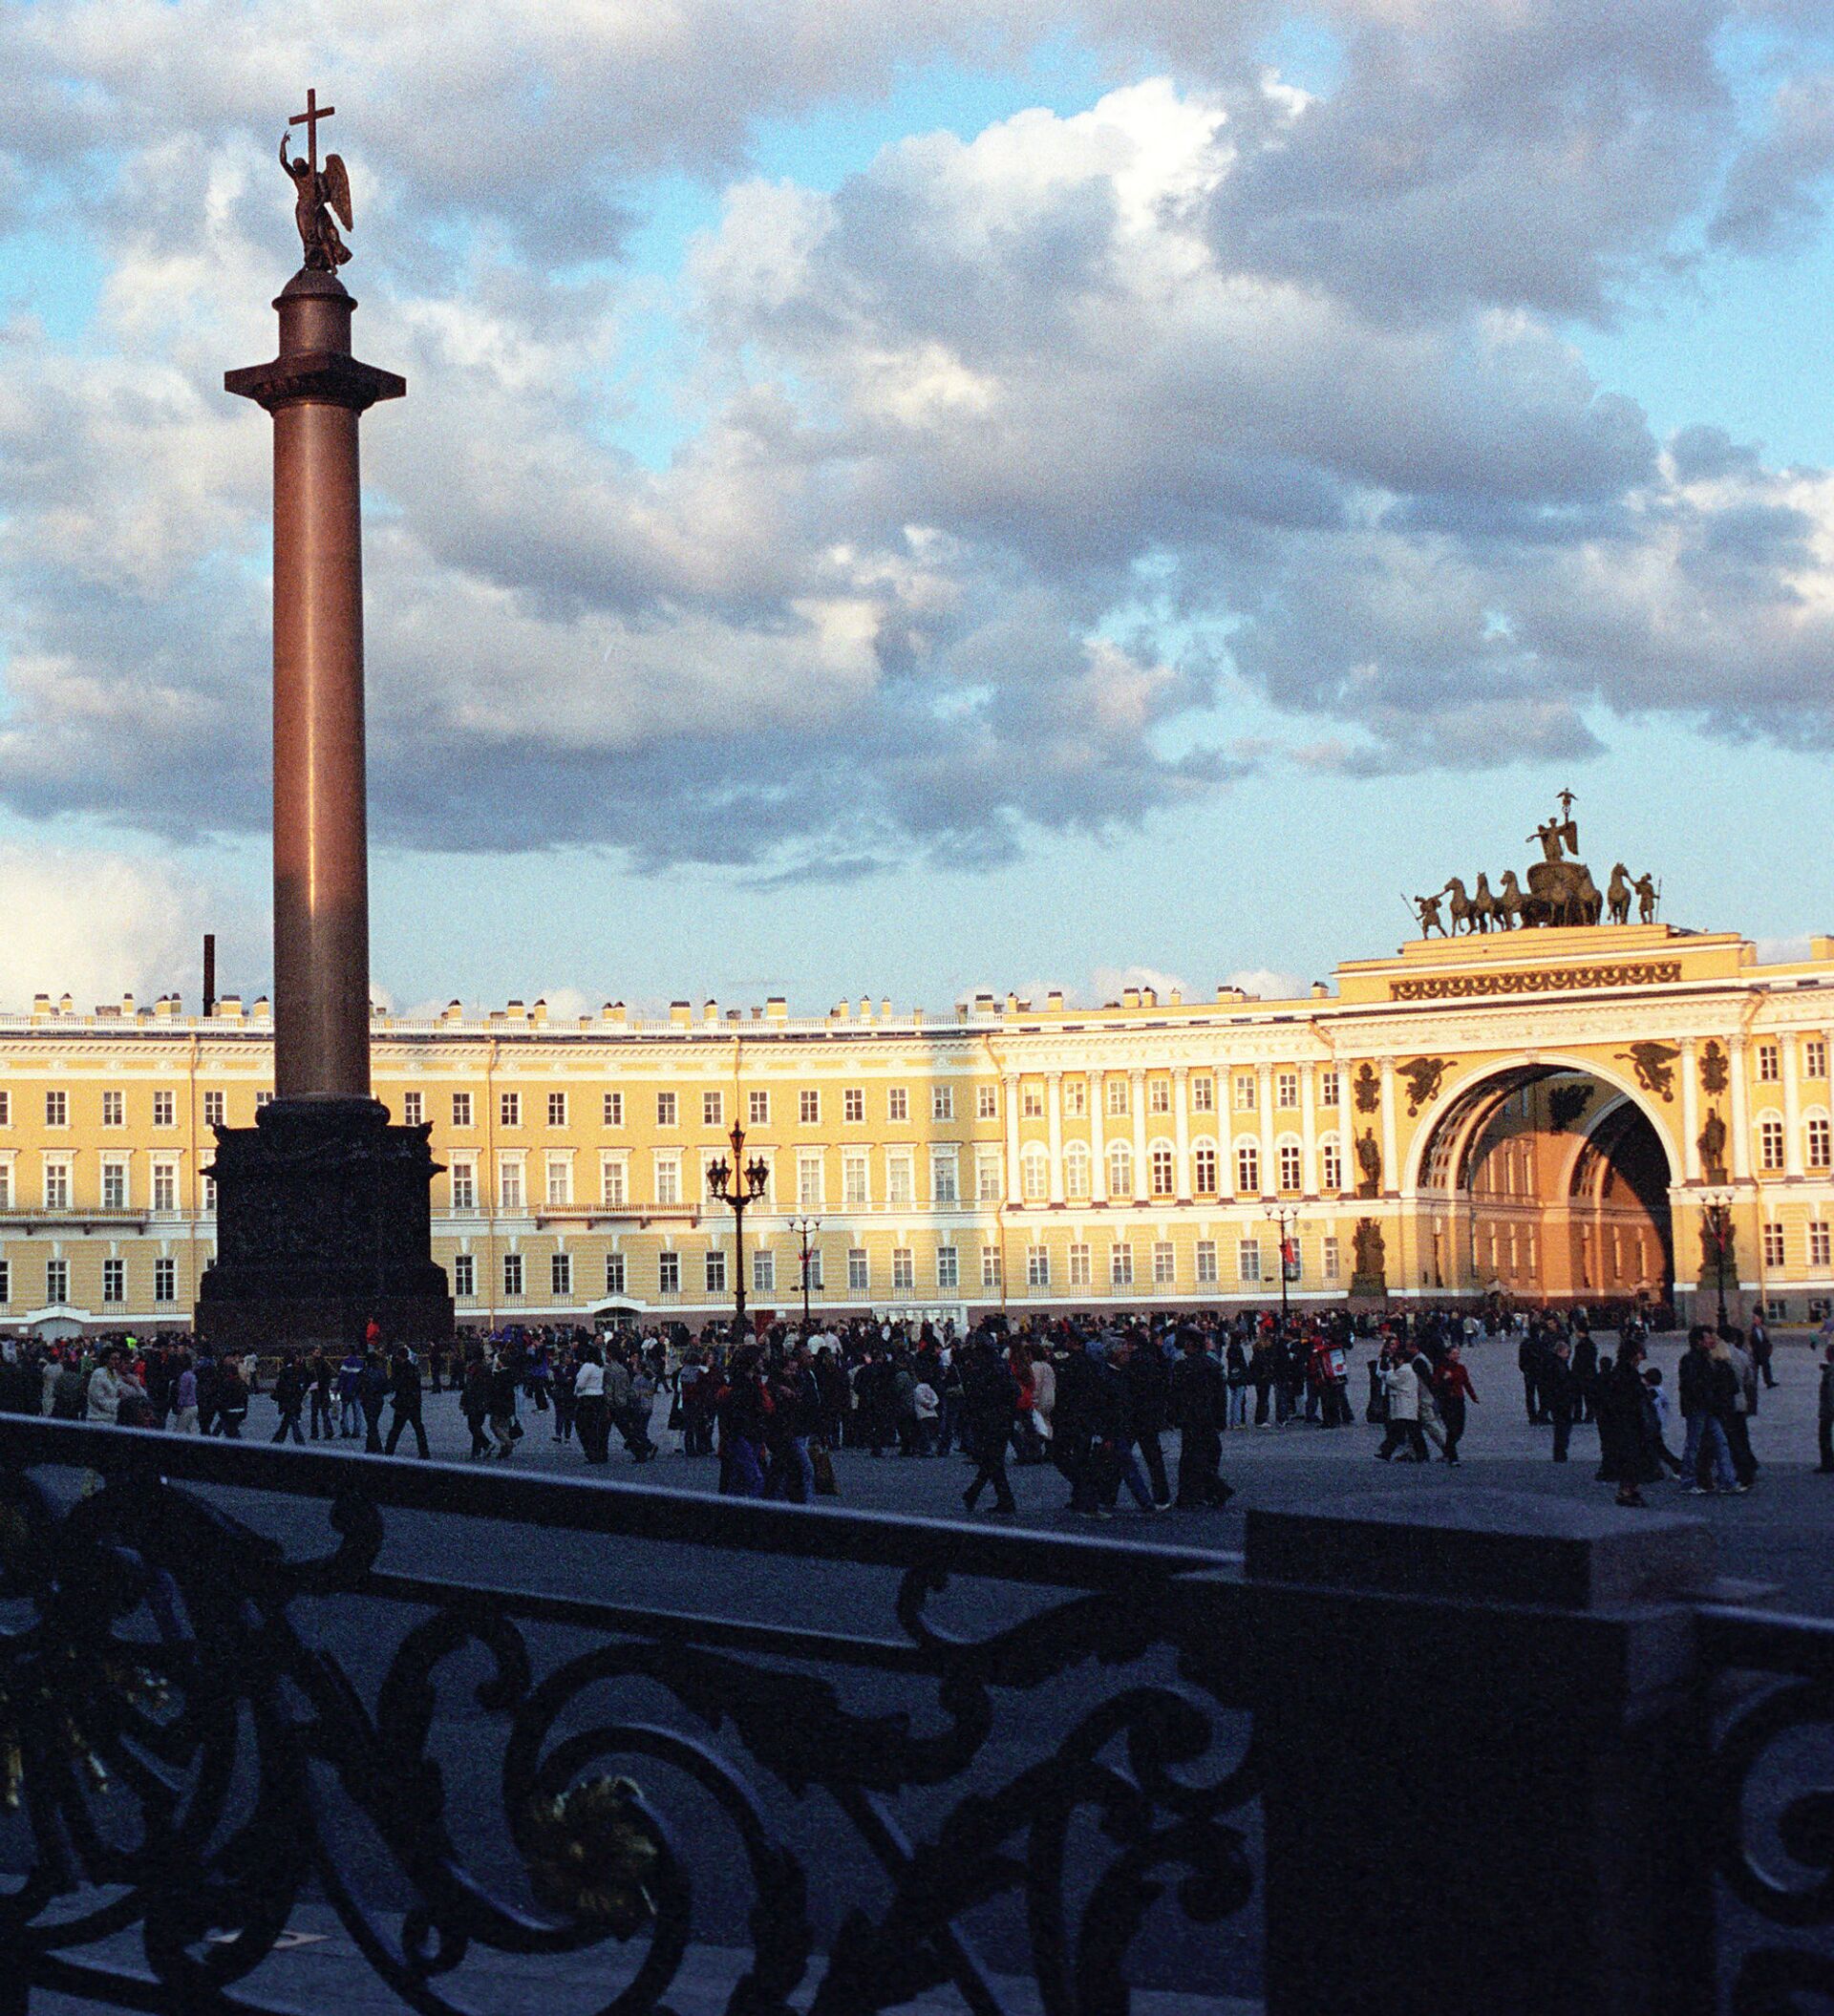 Александровская колонна на дворцовой площади в санкт петербурге